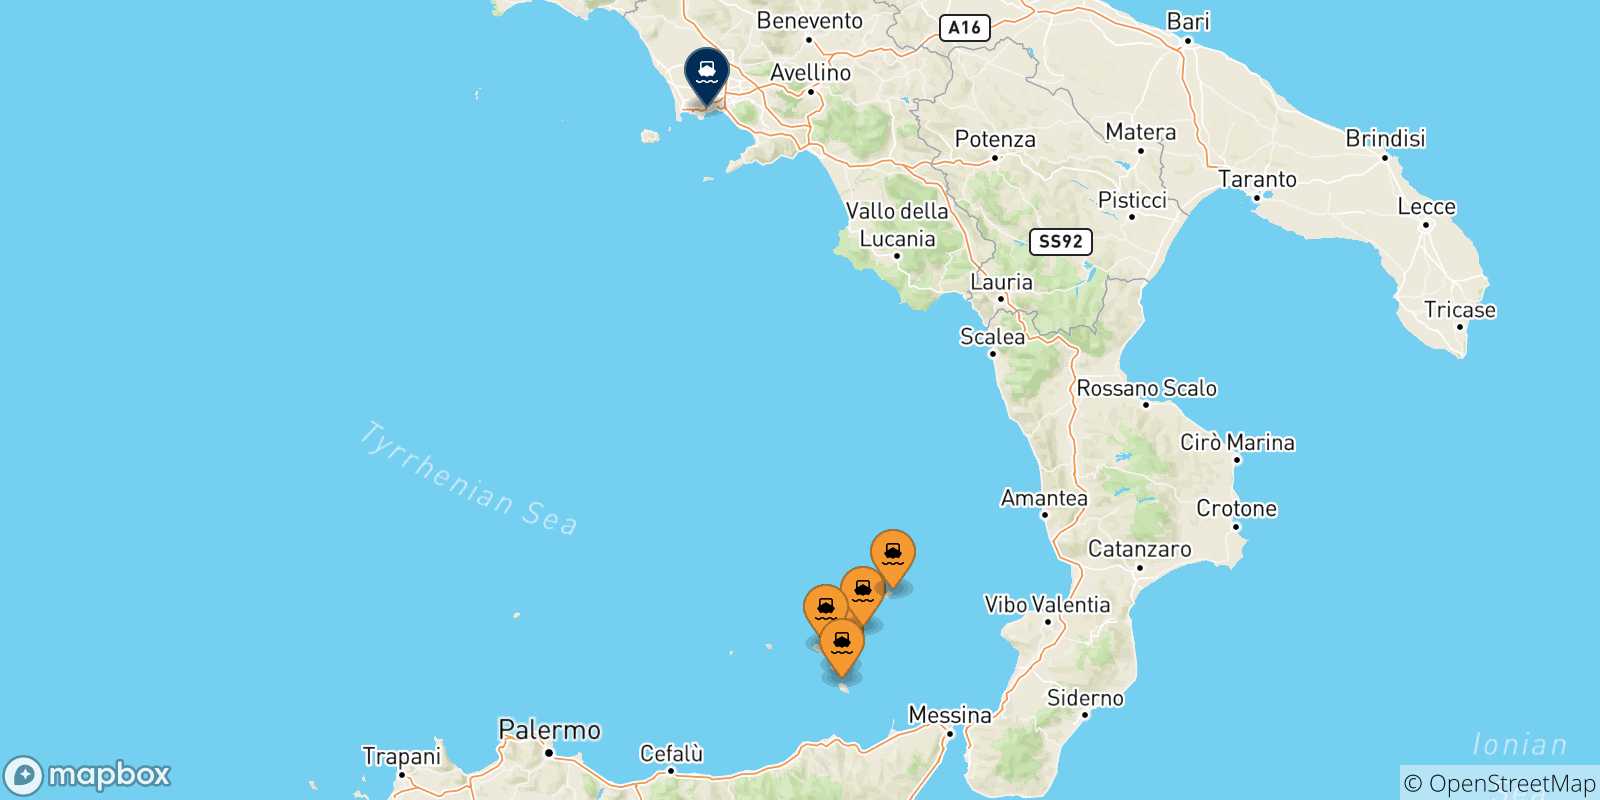 Mappa delle possibili rotte tra le Isole Eolie e Napoli Mergellina